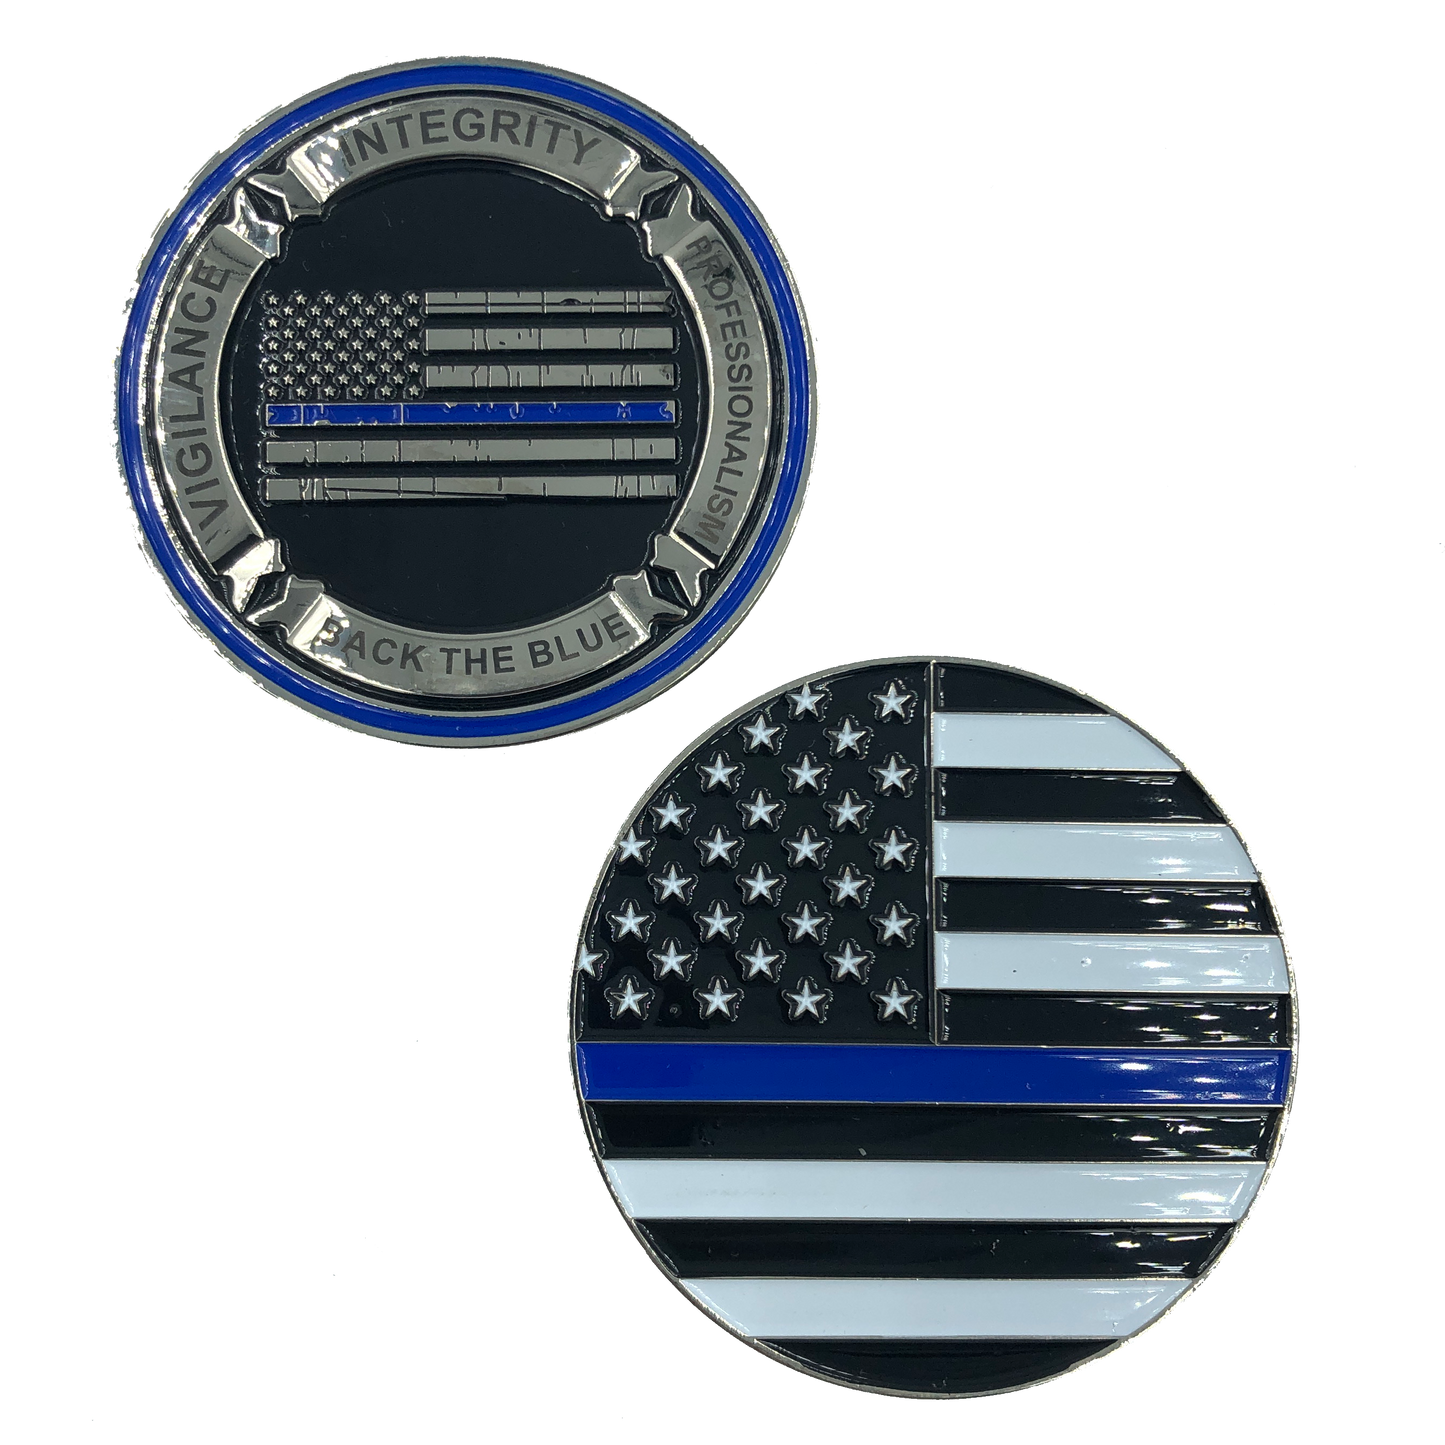 J-006 Thin Blue Line Back the Blue Core Values Challenge Coin Police CBP Law Enforcement